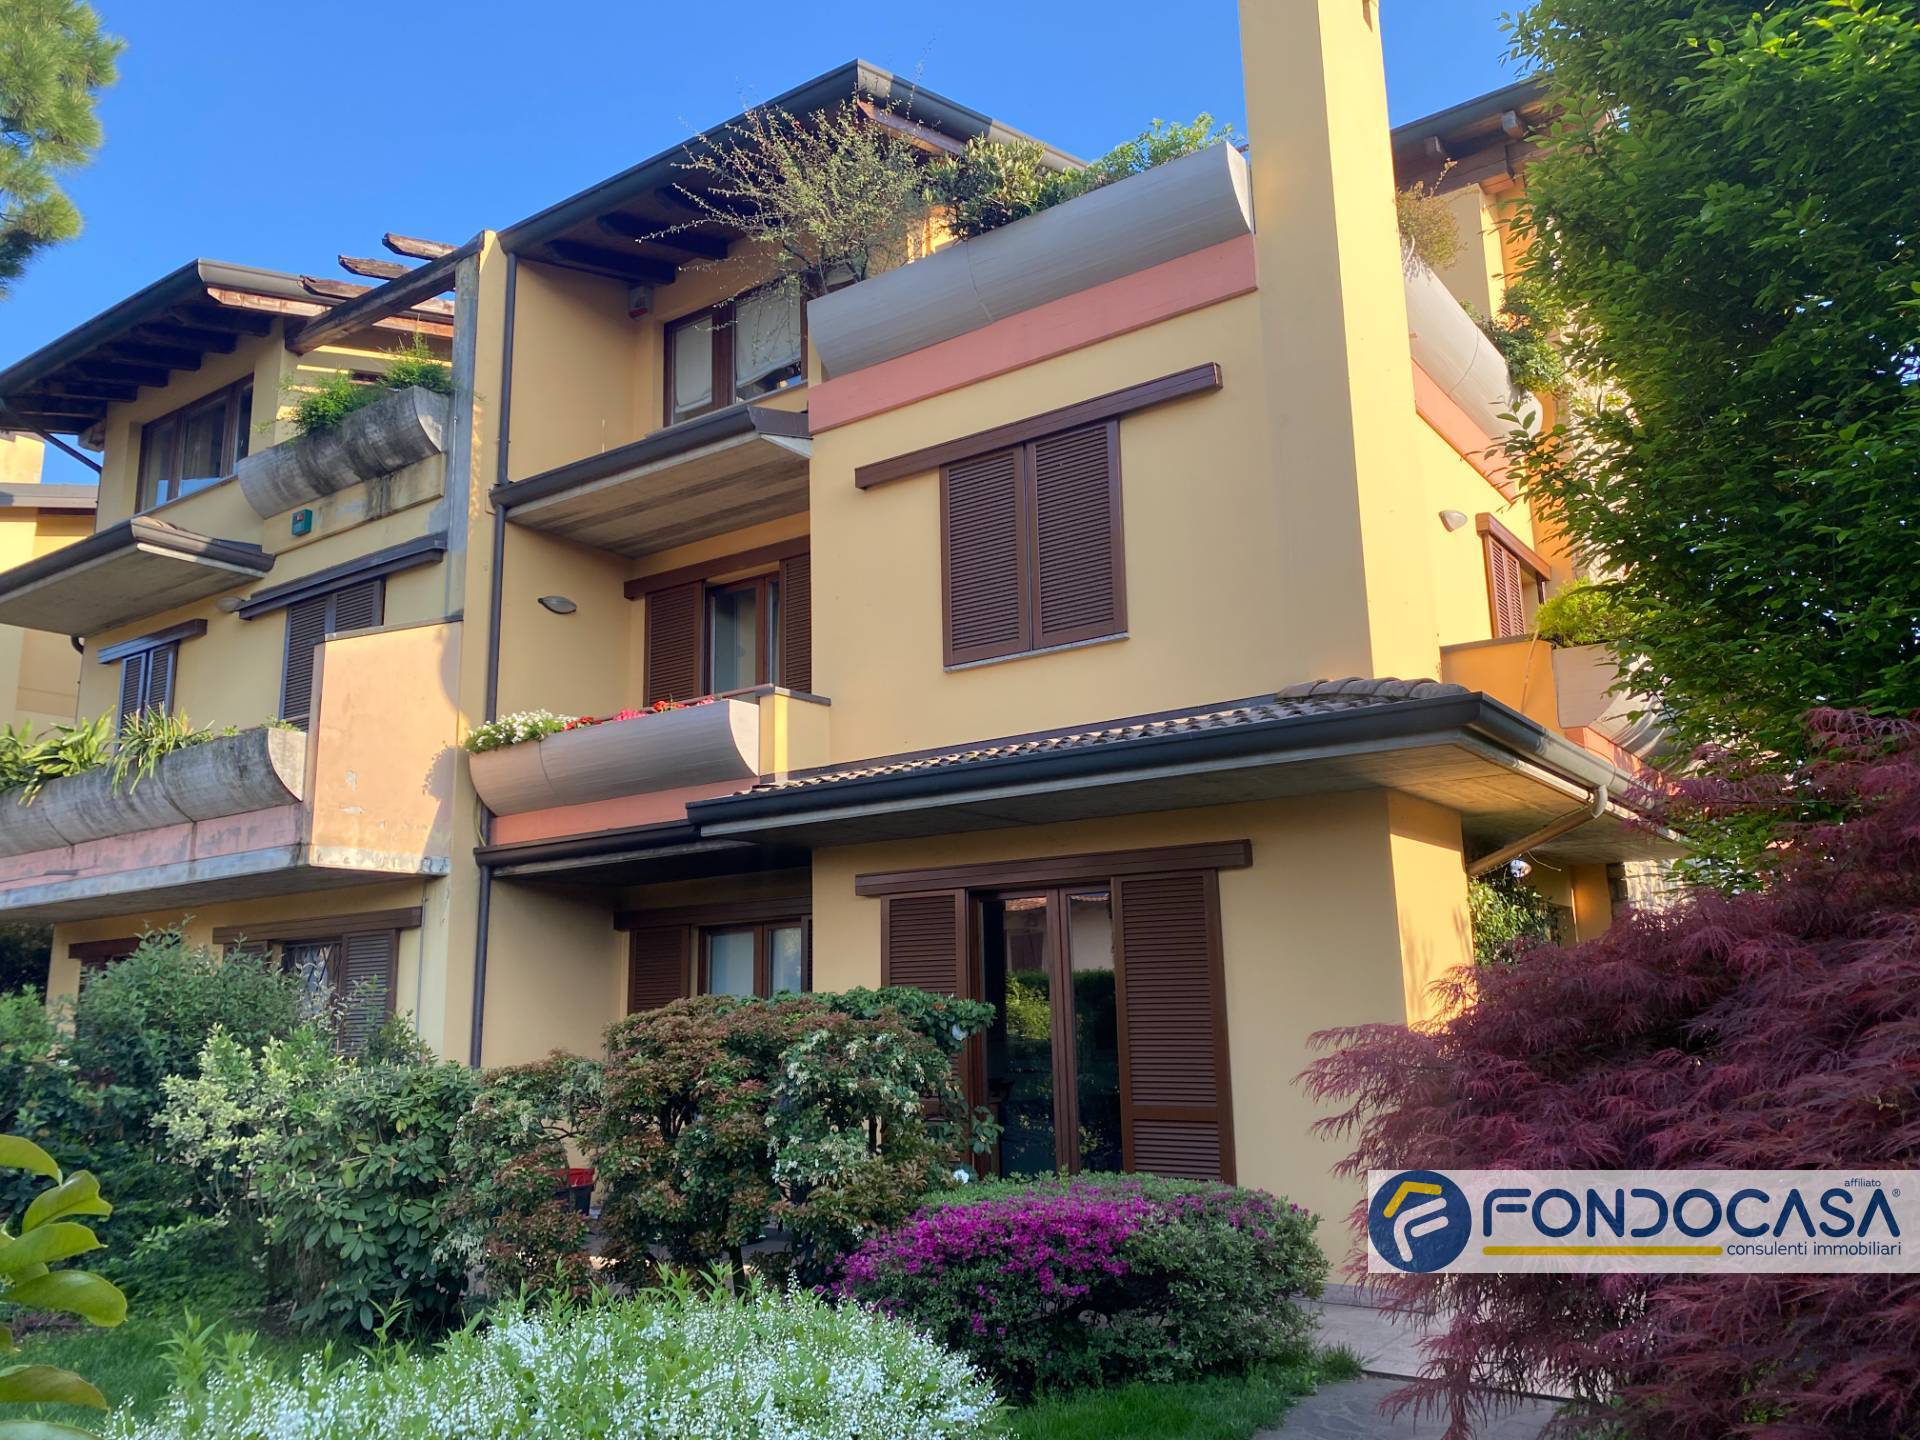 Villa in vendita a Palazzolo sull'Oglio, 8 locali, Trattative riservate | PortaleAgenzieImmobiliari.it